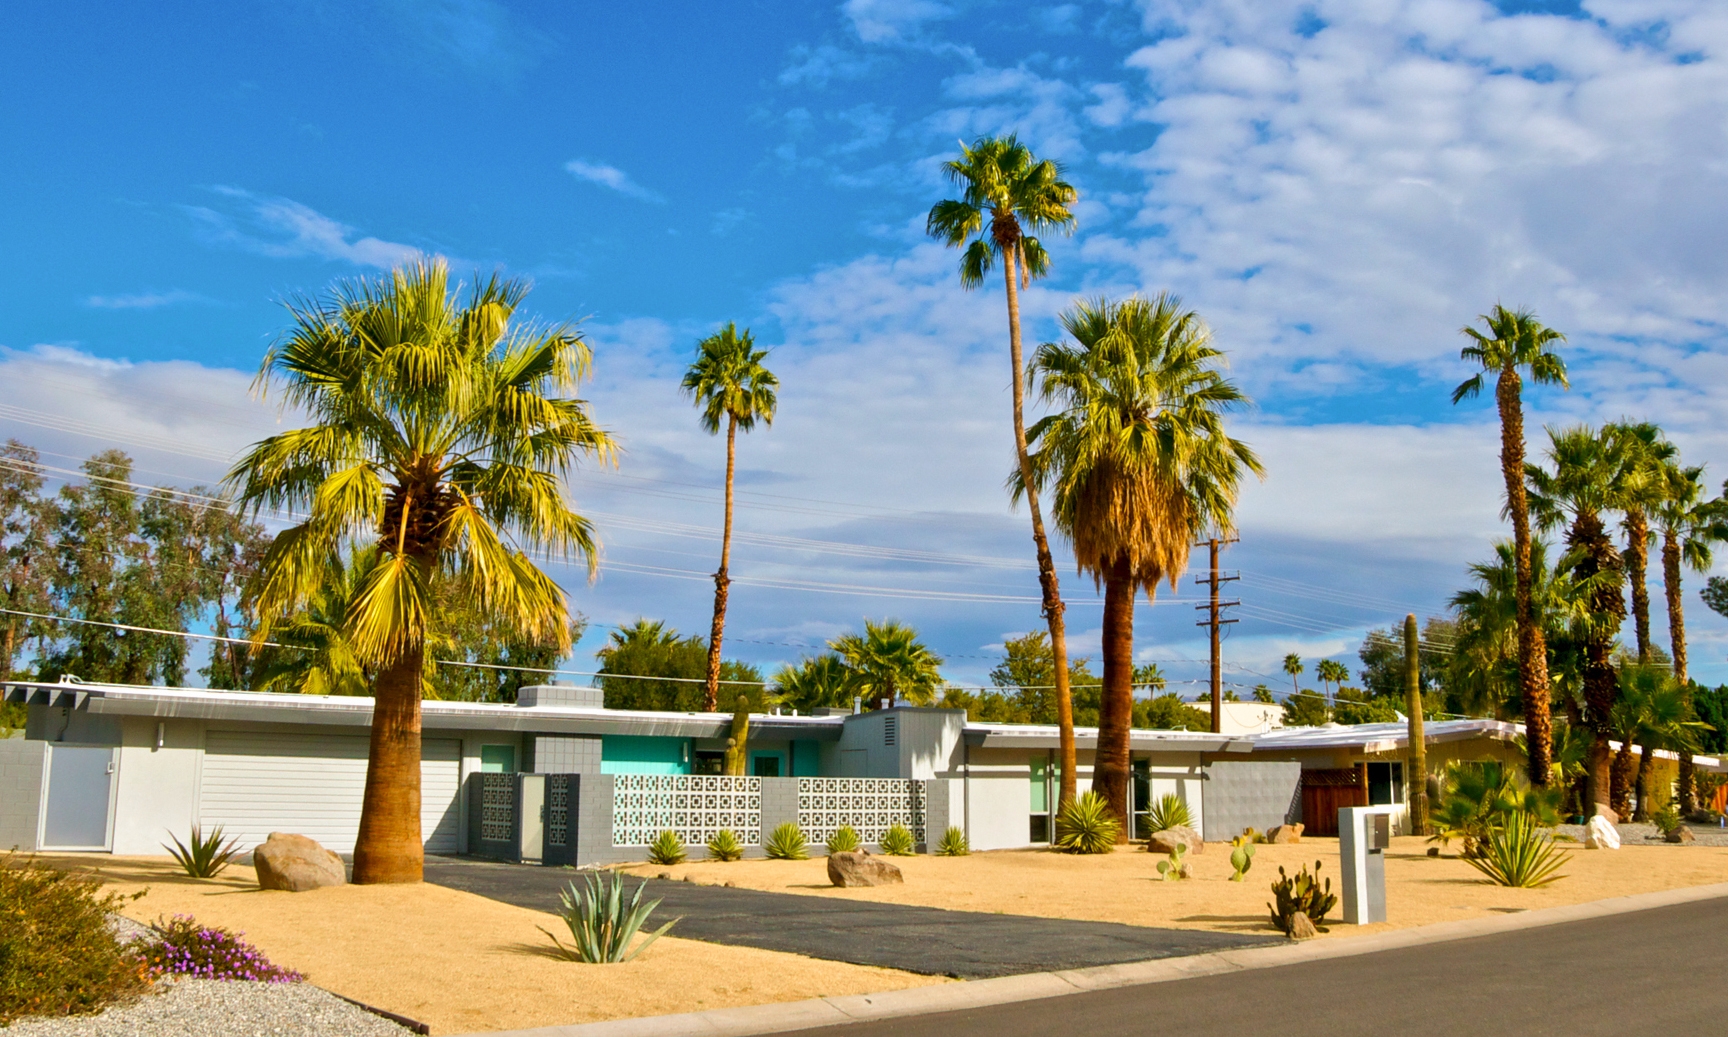 Club Pilates Palm Springs - Visit Palm Springs